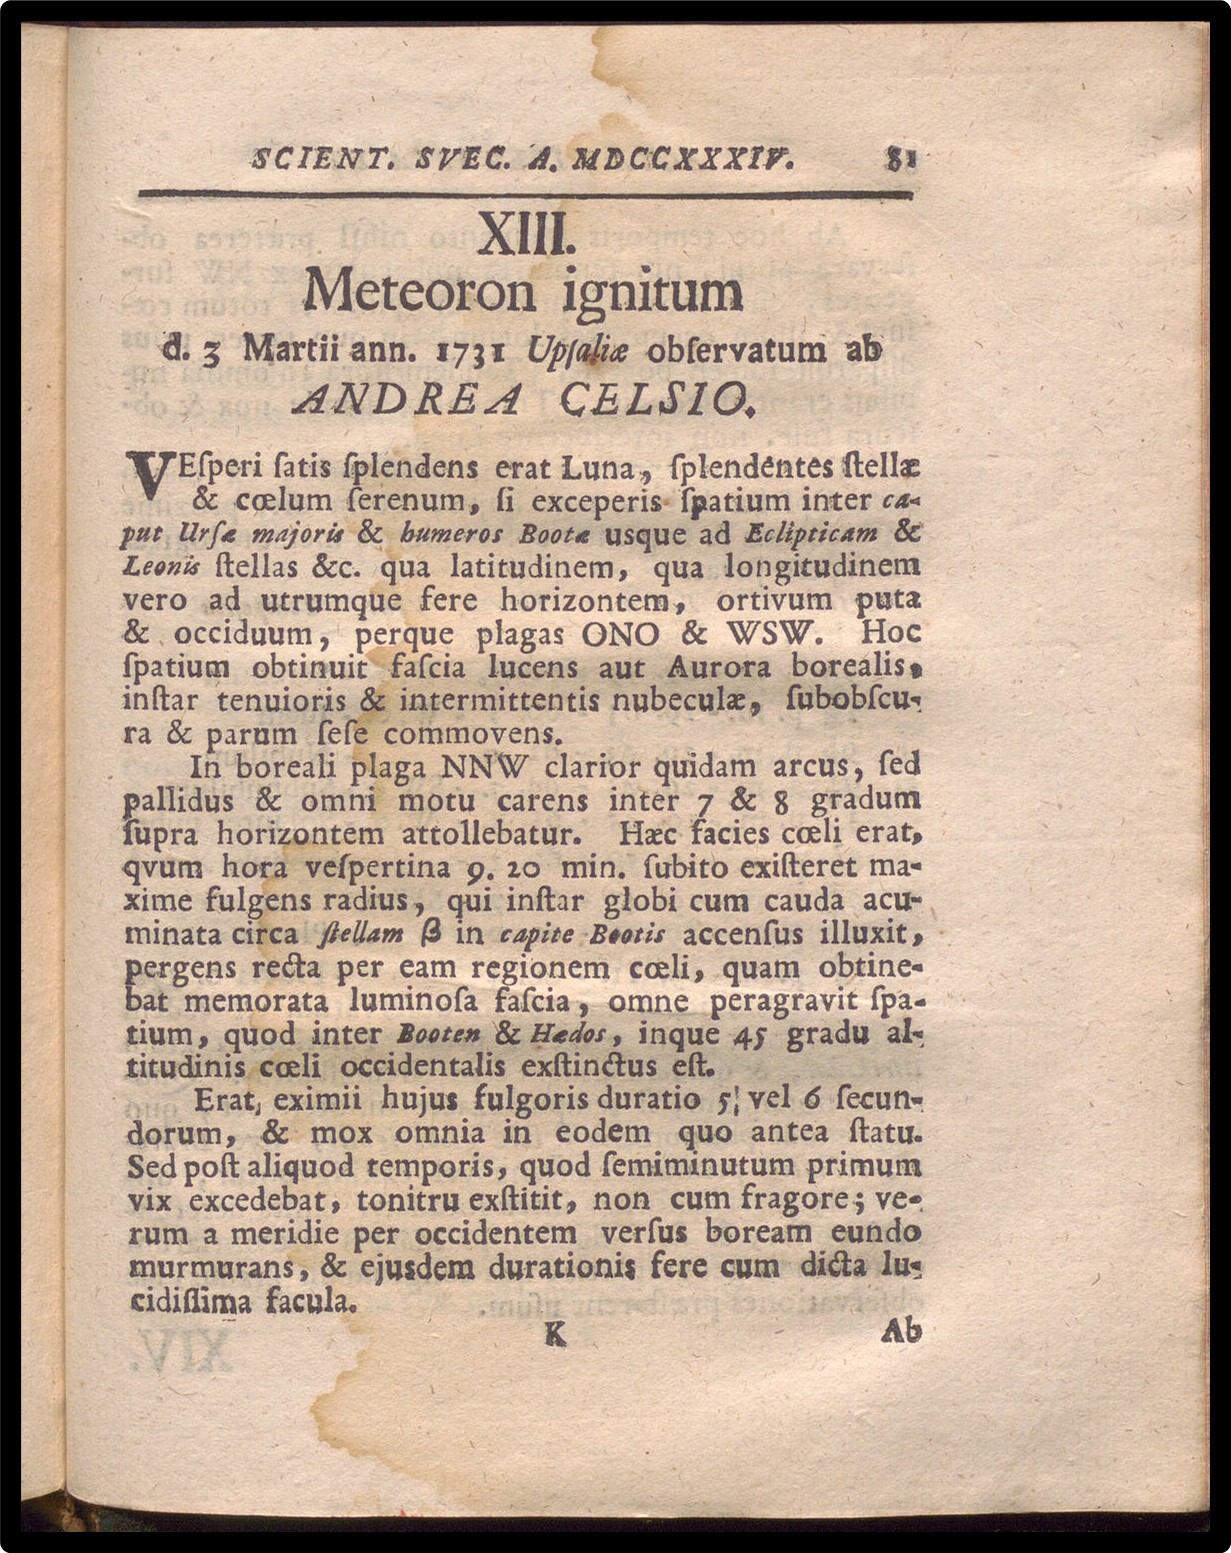 Sample image from the Acta Literaria et Scientiarum Sveciae.